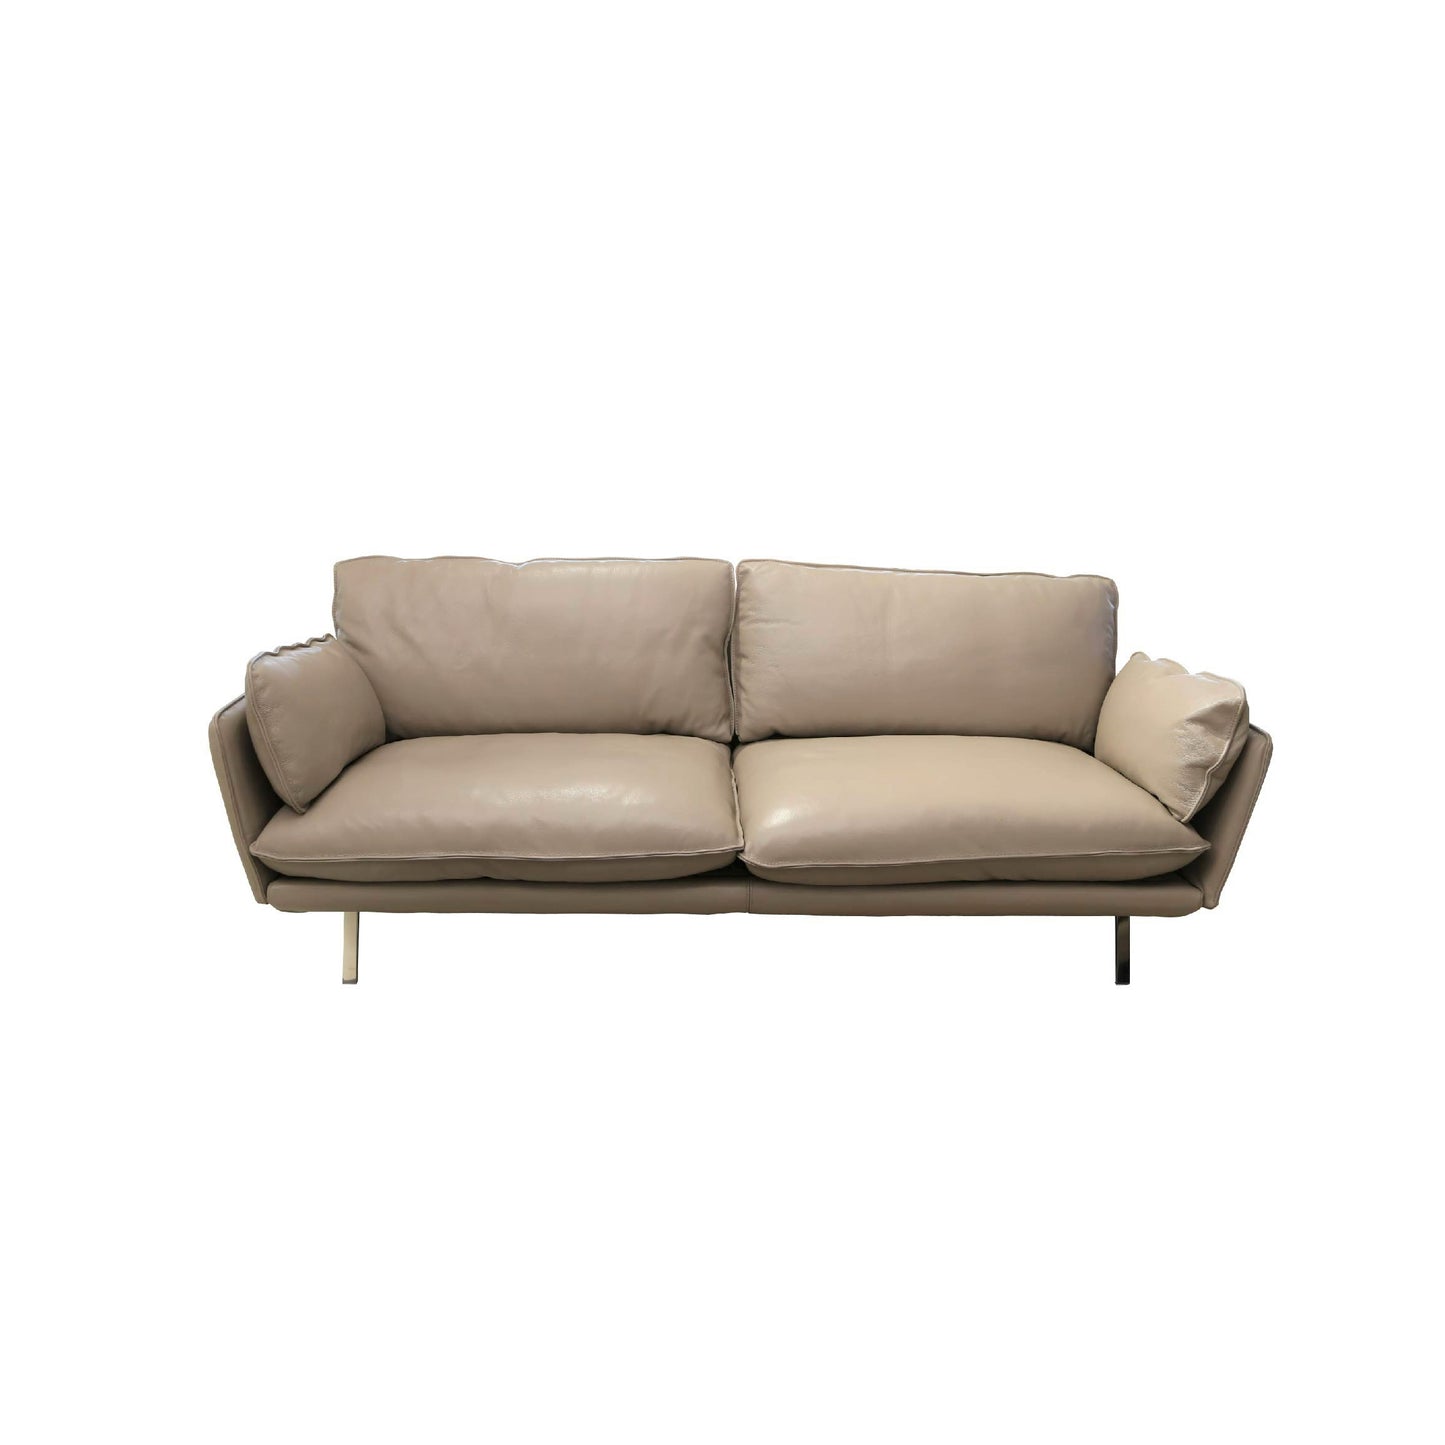 Dialto 2 Seater Sofa